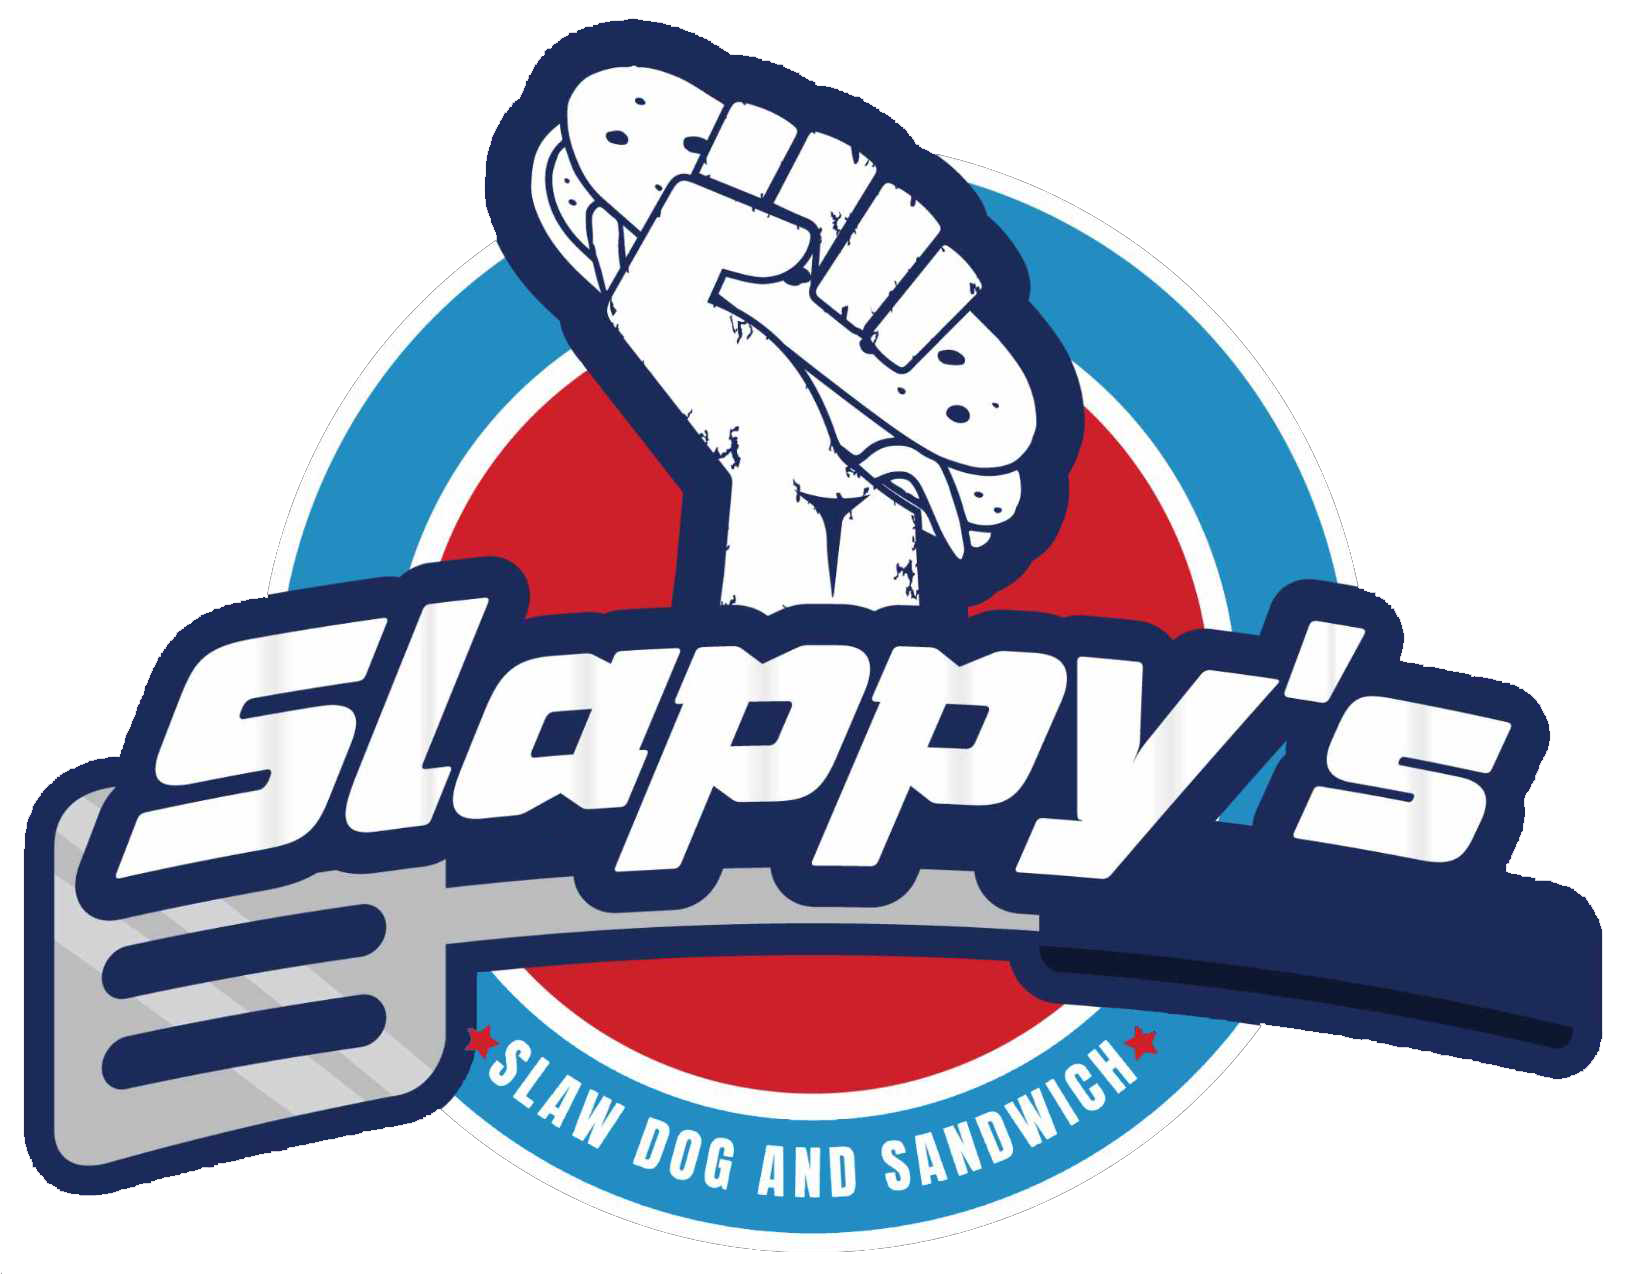 Slappy's Slaw Dog and Sandwich